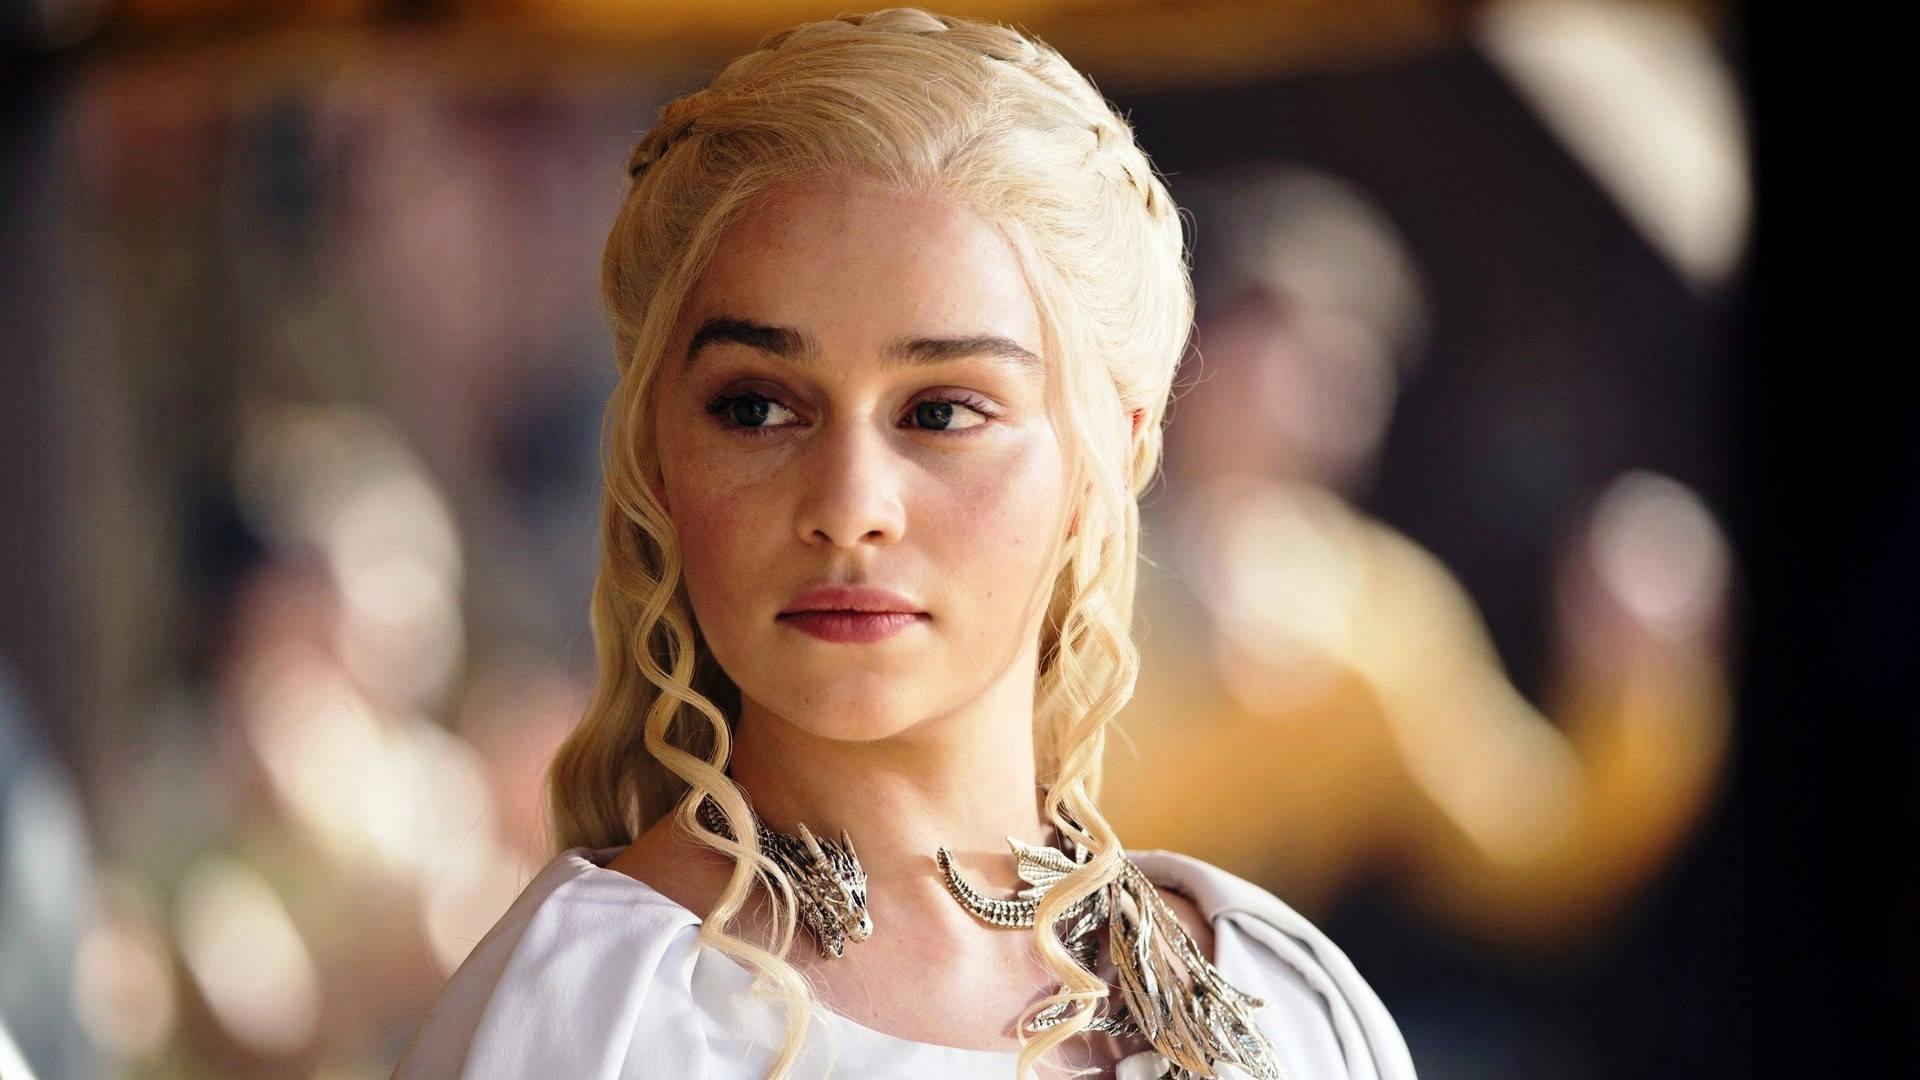 Emilia Clarke Dronning Daenerys Stormborn af huset Targaryen, den første af hendes navn, dronning af andals og de første mænd, beskytter af de syv kongeriger, moder til draoner. Wallpaper